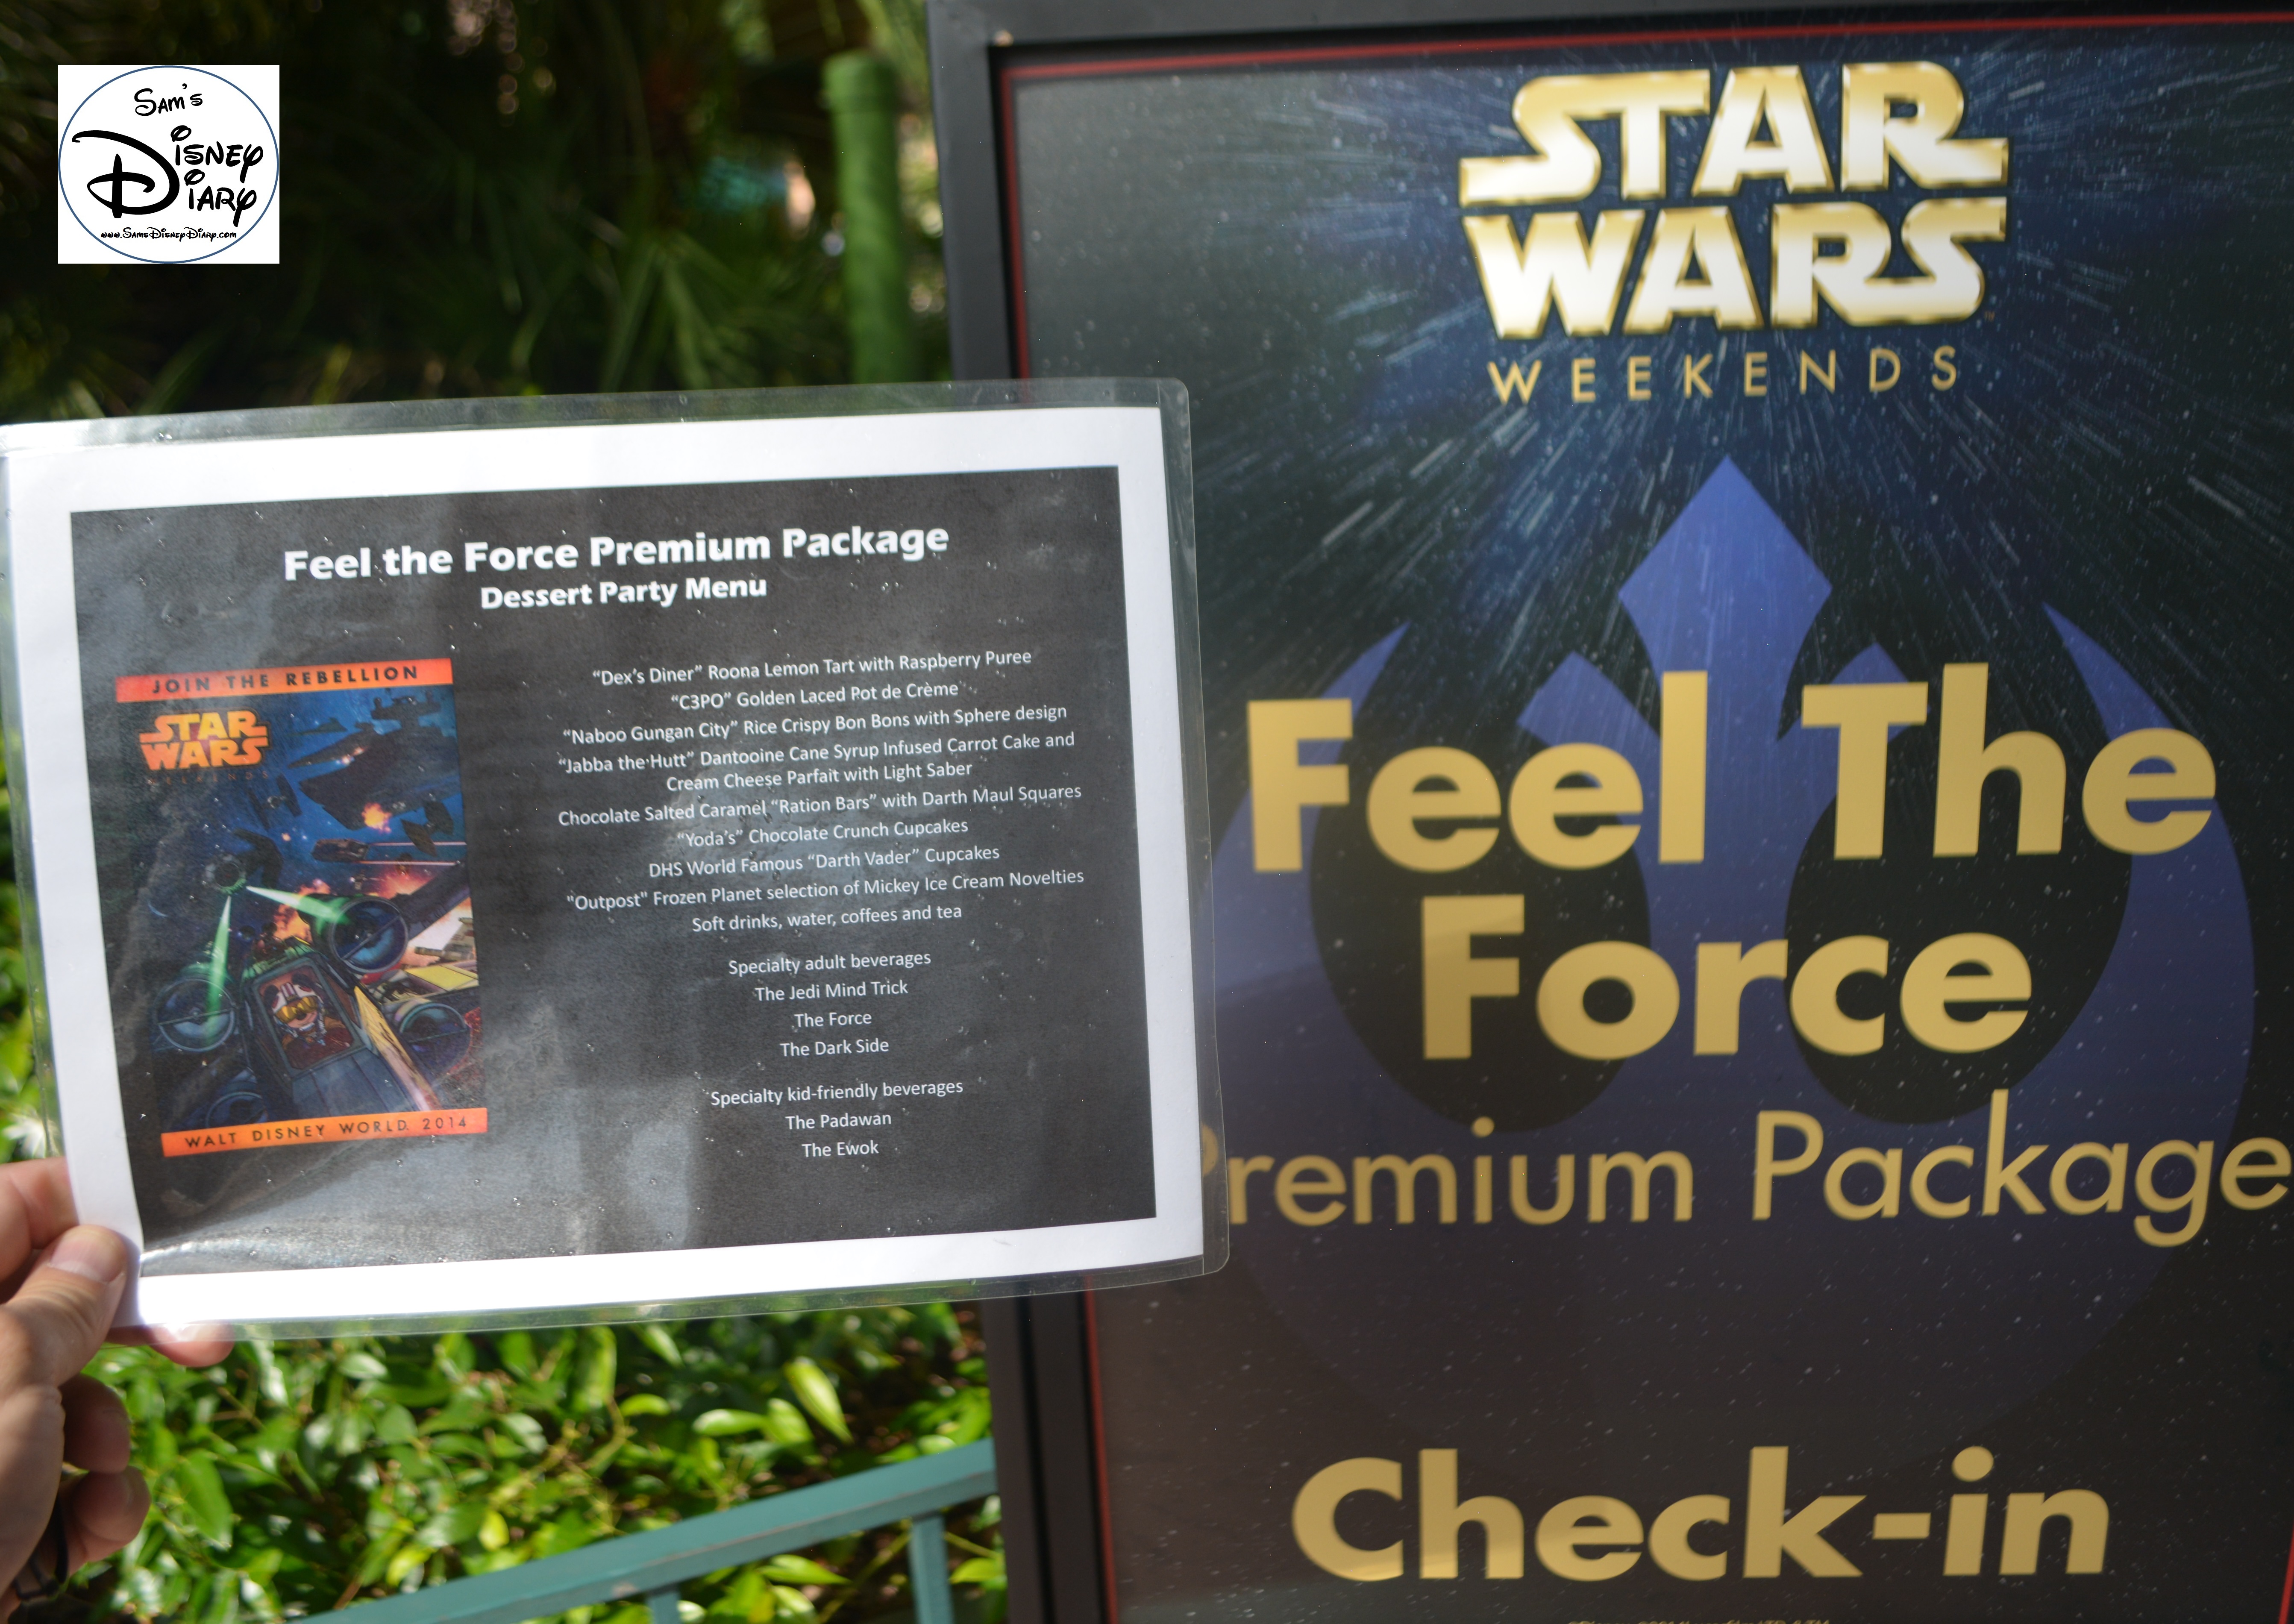 Star Wars Weekend "Fell The Force" Premium Package Dessert Menu - Yes Please!!